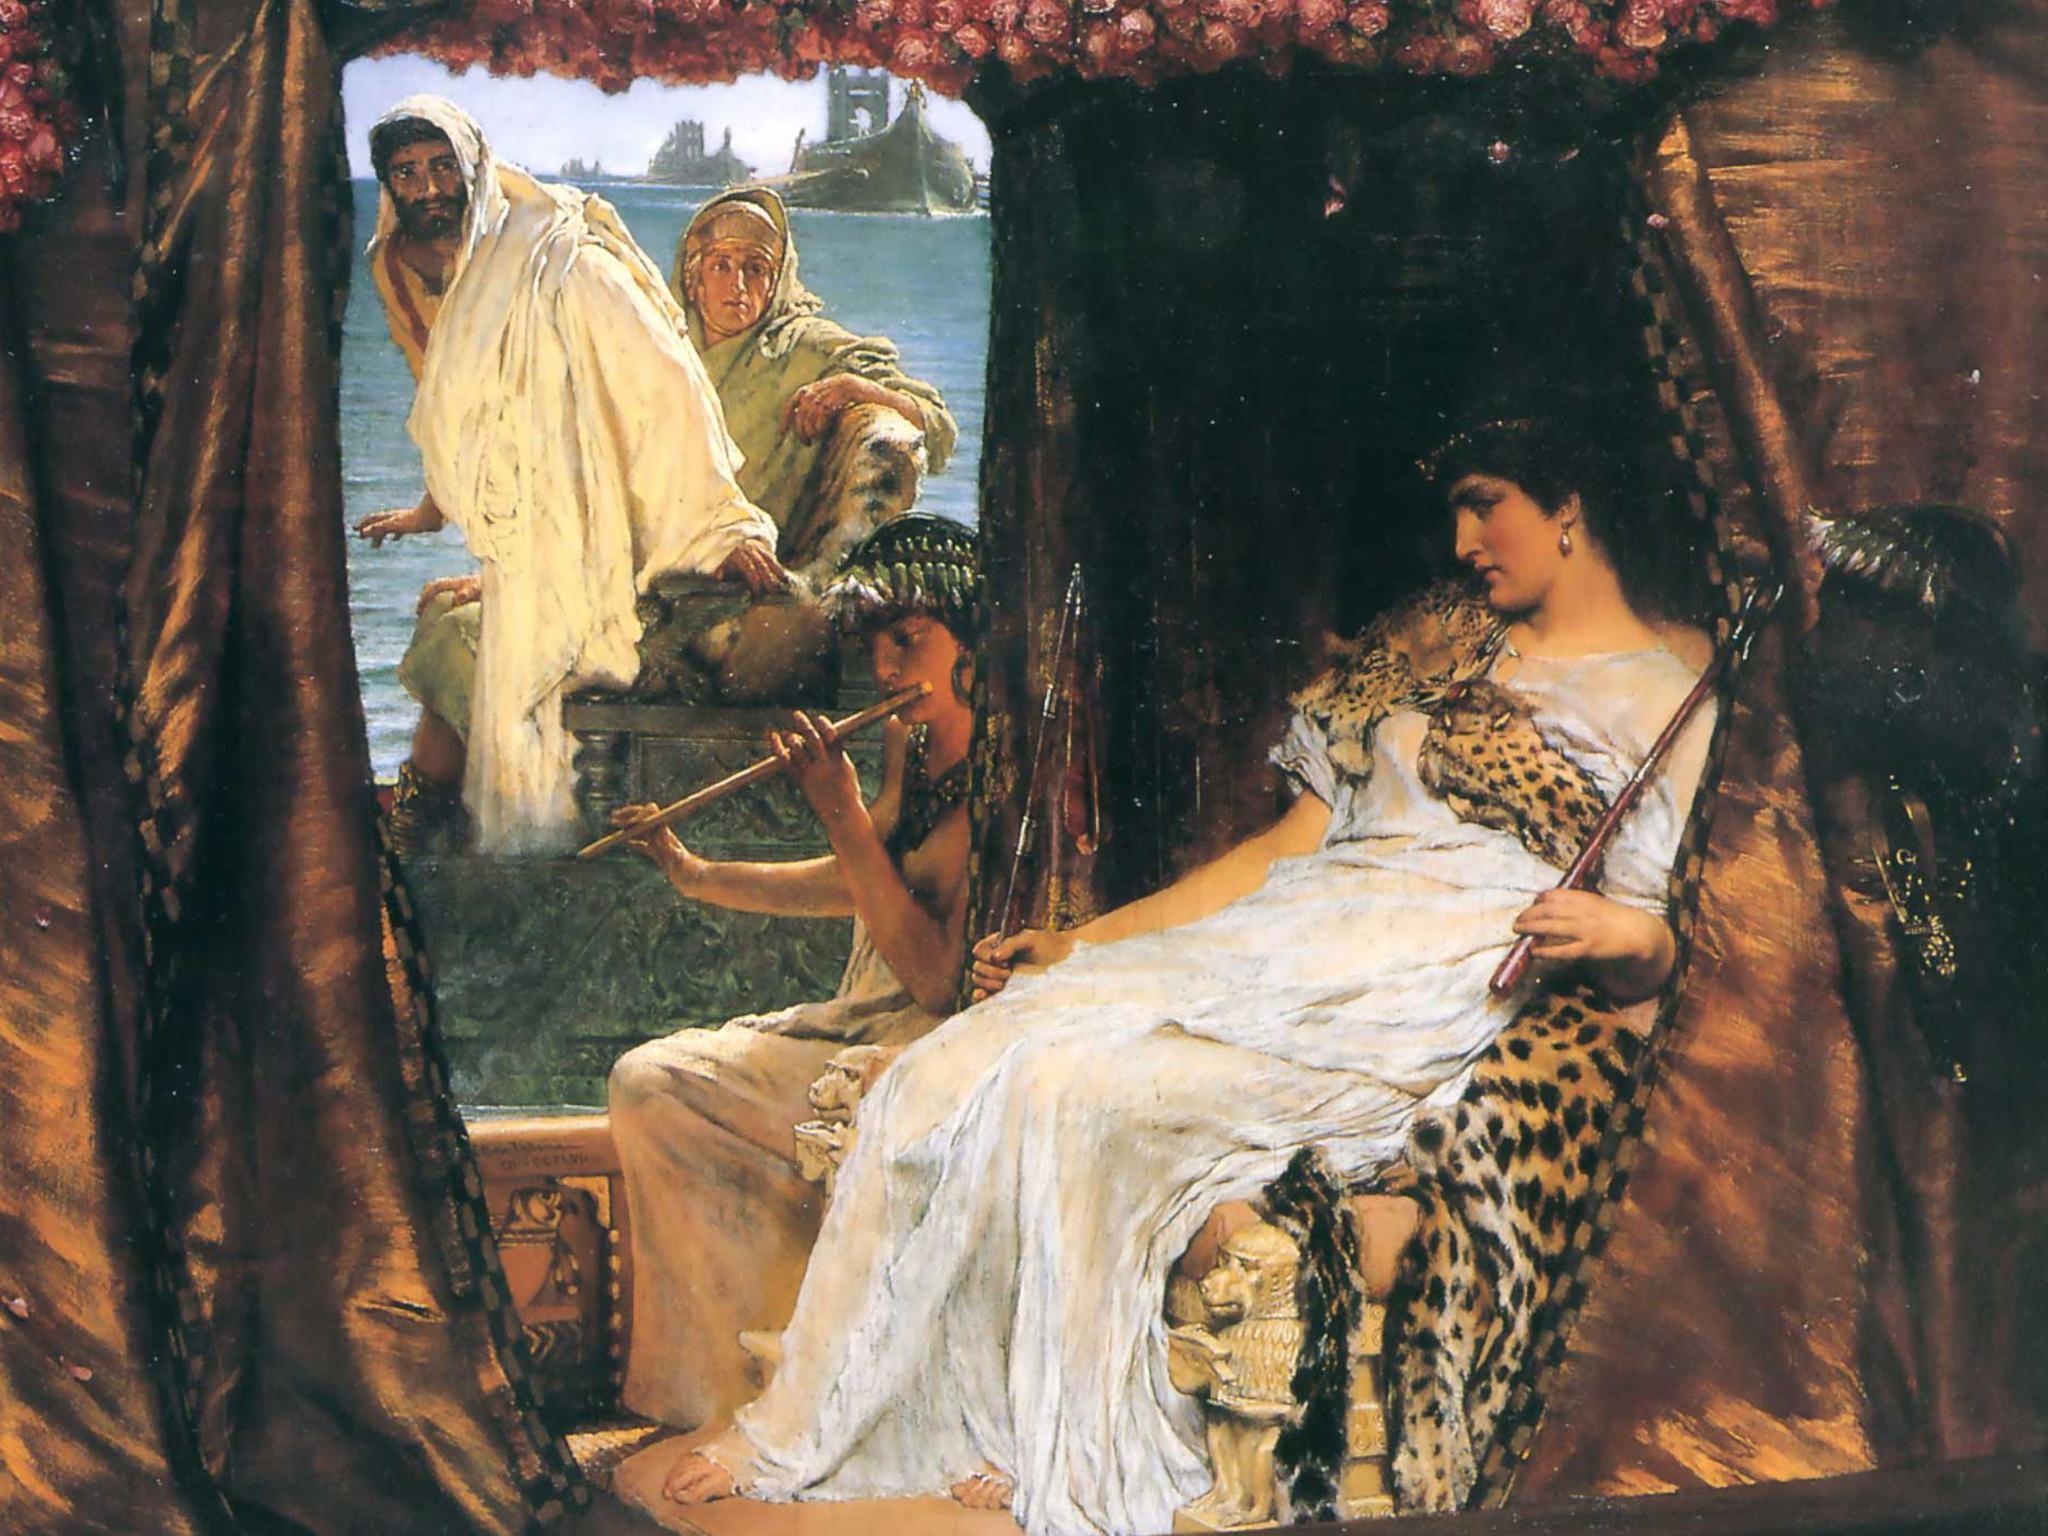 Antony and Cleopatra, 1883, by Sir Lawrence Alma-Tadema